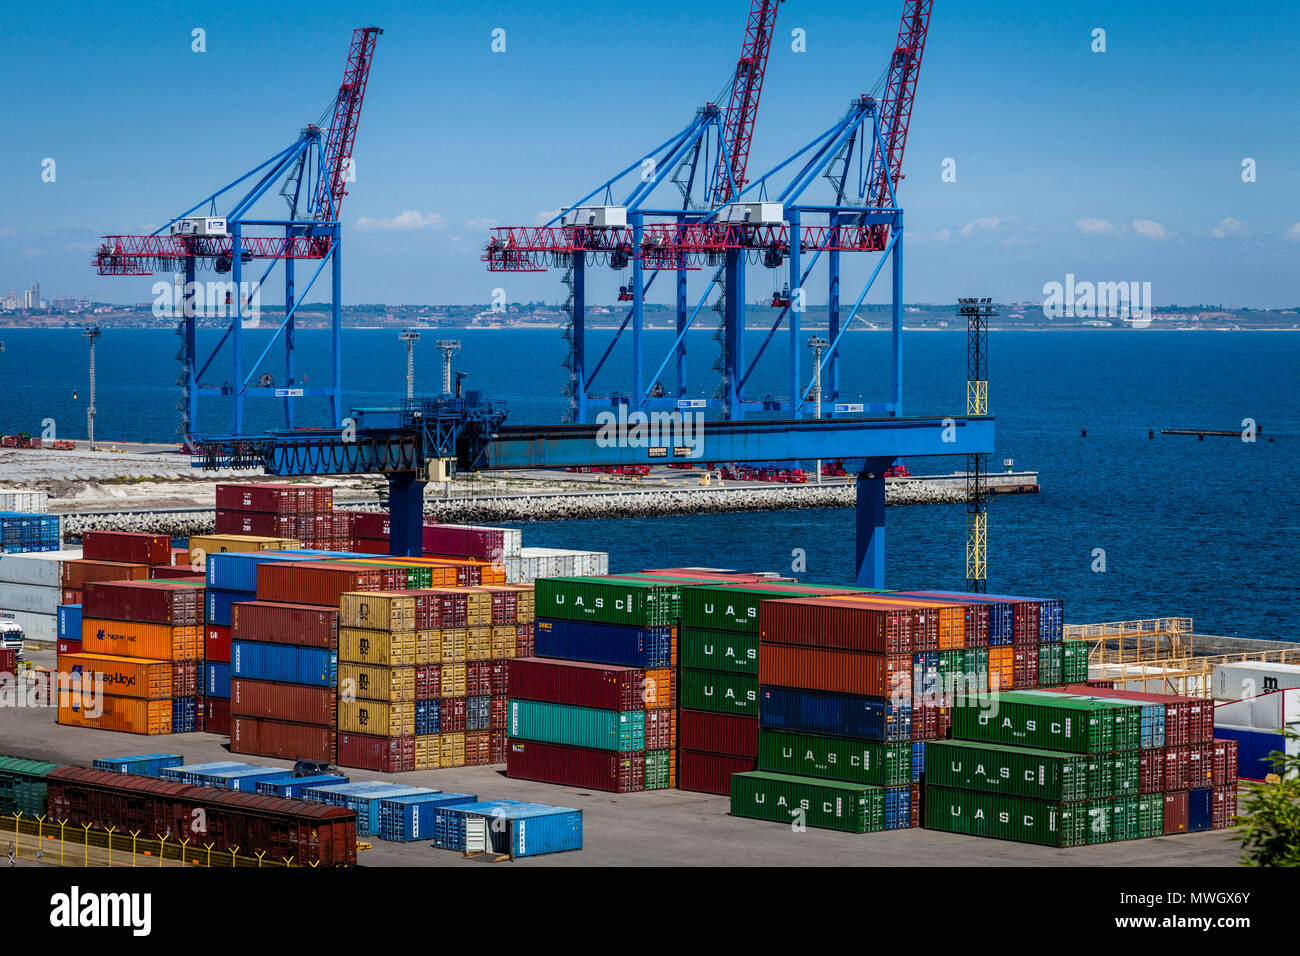 Odessa Marine Trade Port, Odessa, Ukraine Stock Photo - Alamy